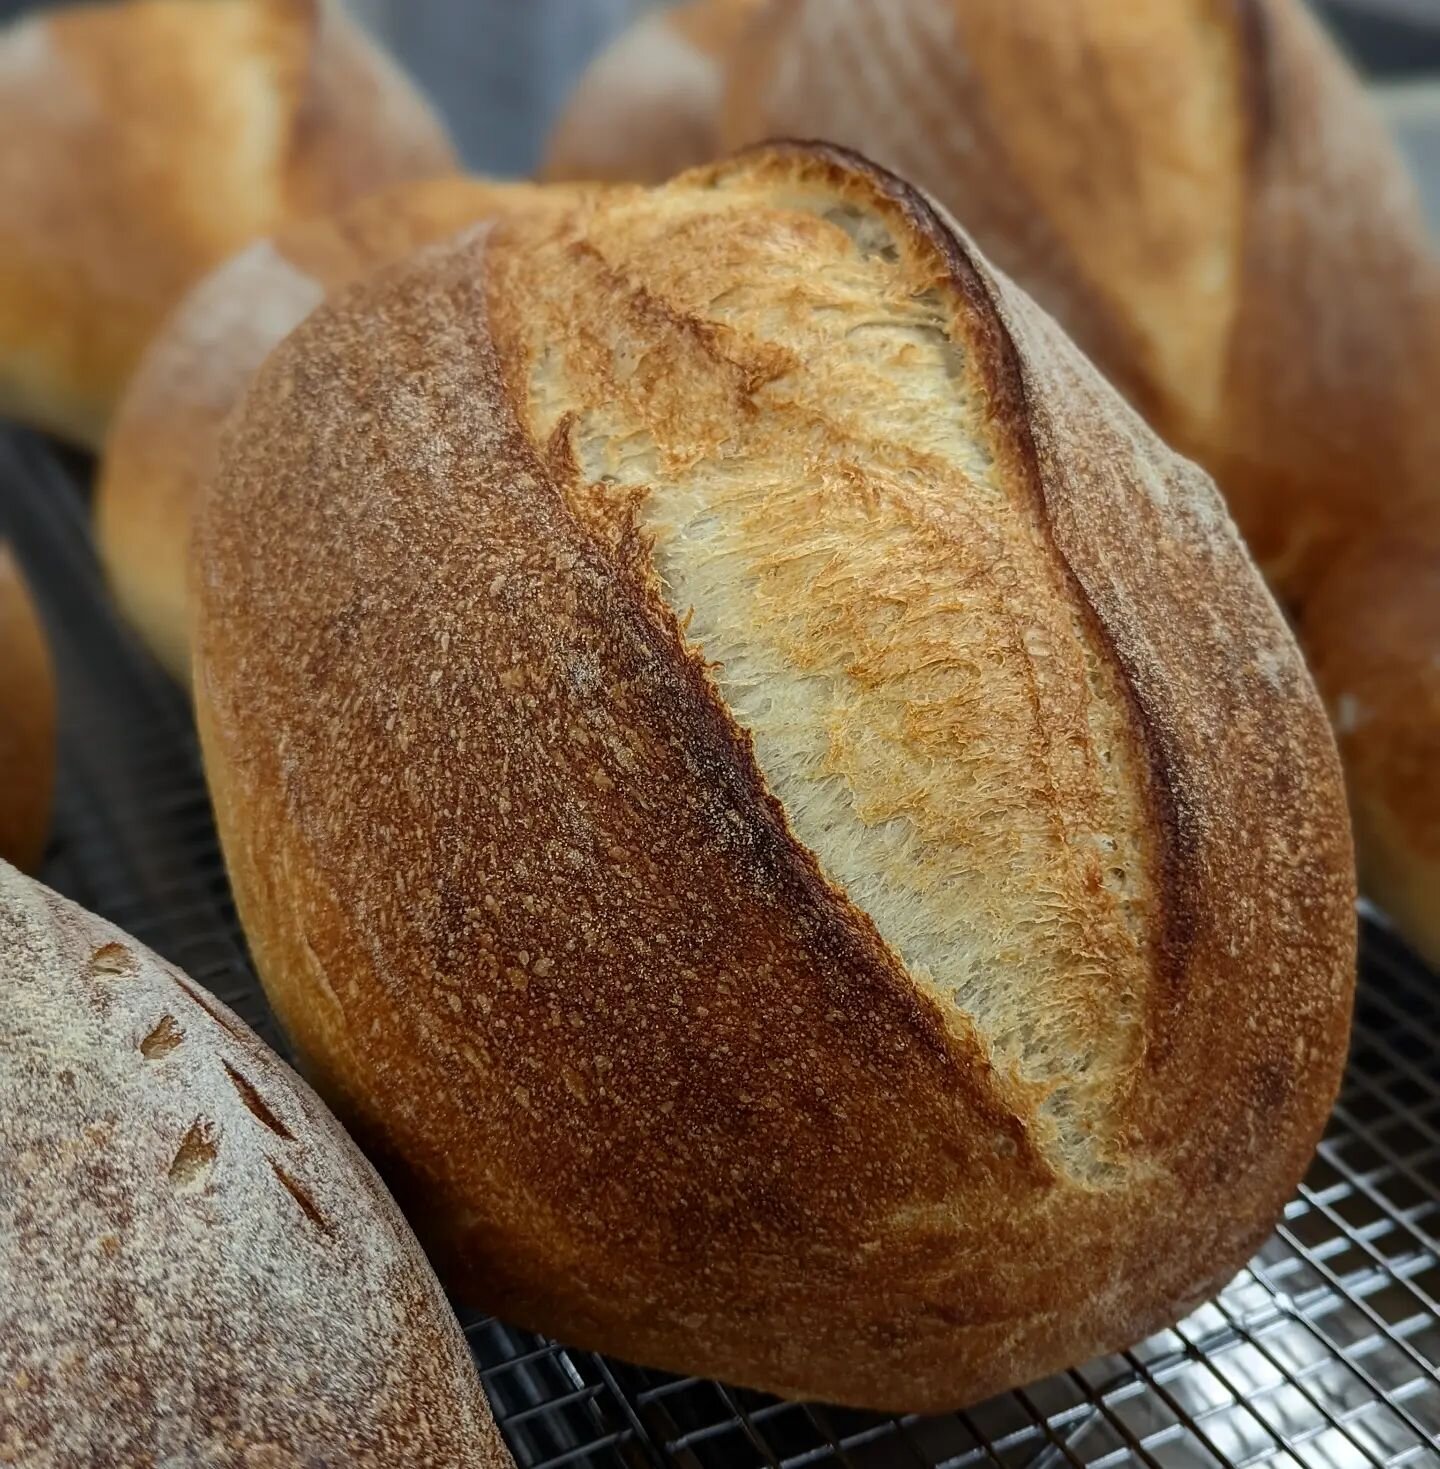 Wild Yeast Sourdough ! 
#sourdough #wildyeast #sourdoughbread #breadmaking #breadbaking #sourdoughstarter #naturallyleavened #bakery #bakersgonnabake #bakerlife #sourdoughbaking #bakinglove #baking